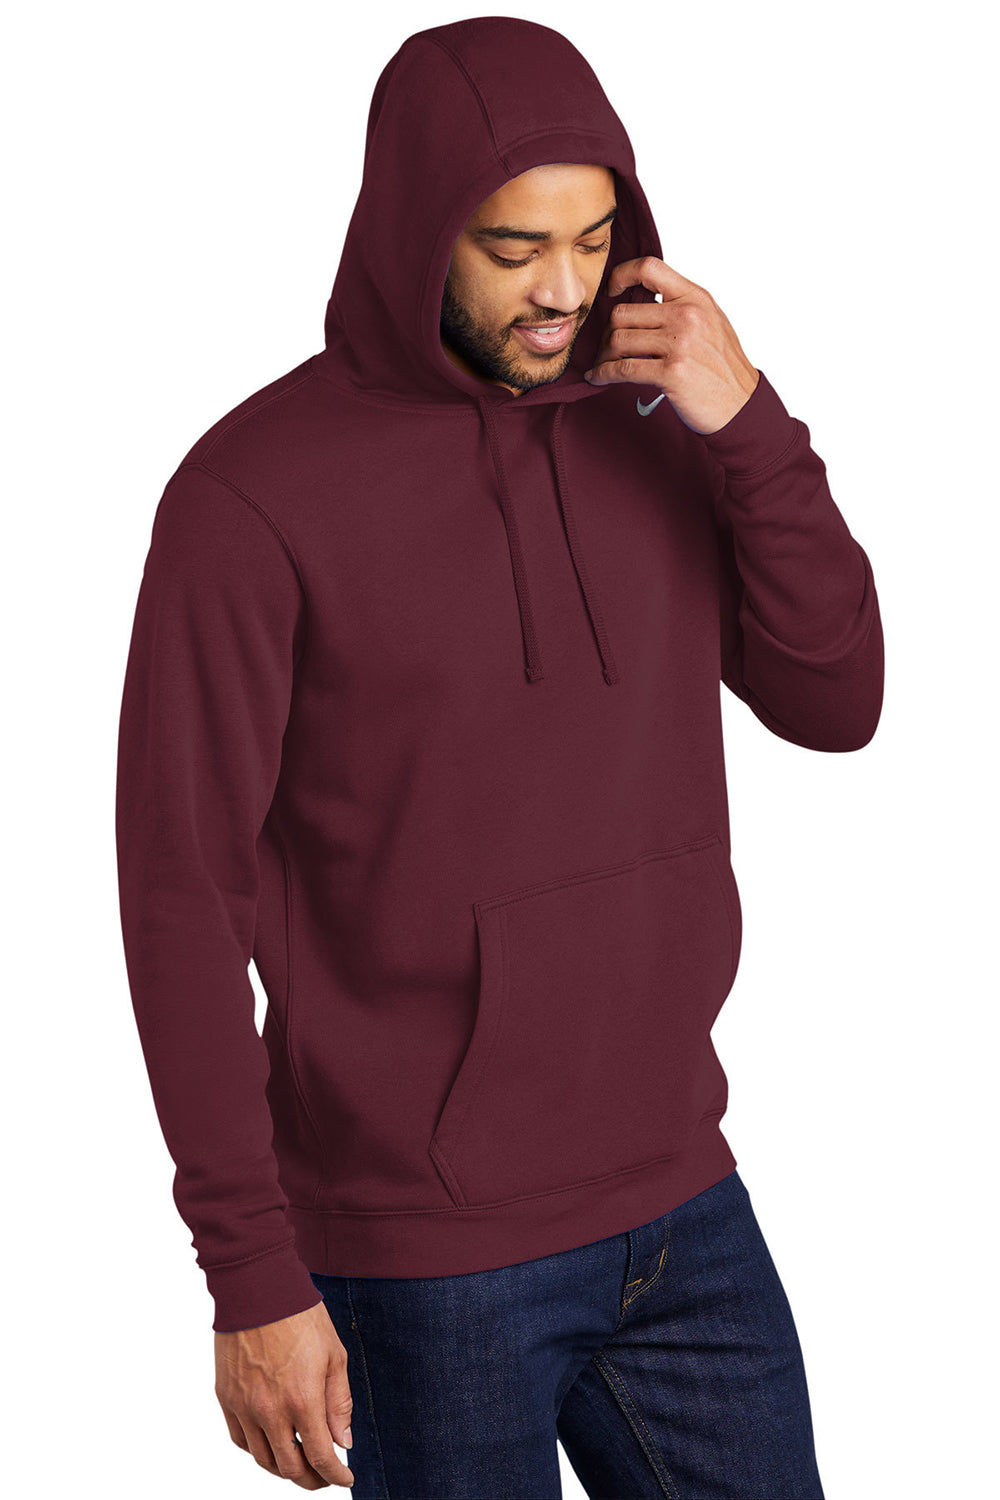 Nike CJ1611 Mens Club Fleece Hooded Sweatshirt Hoodie Dark Maroon Model 3Q